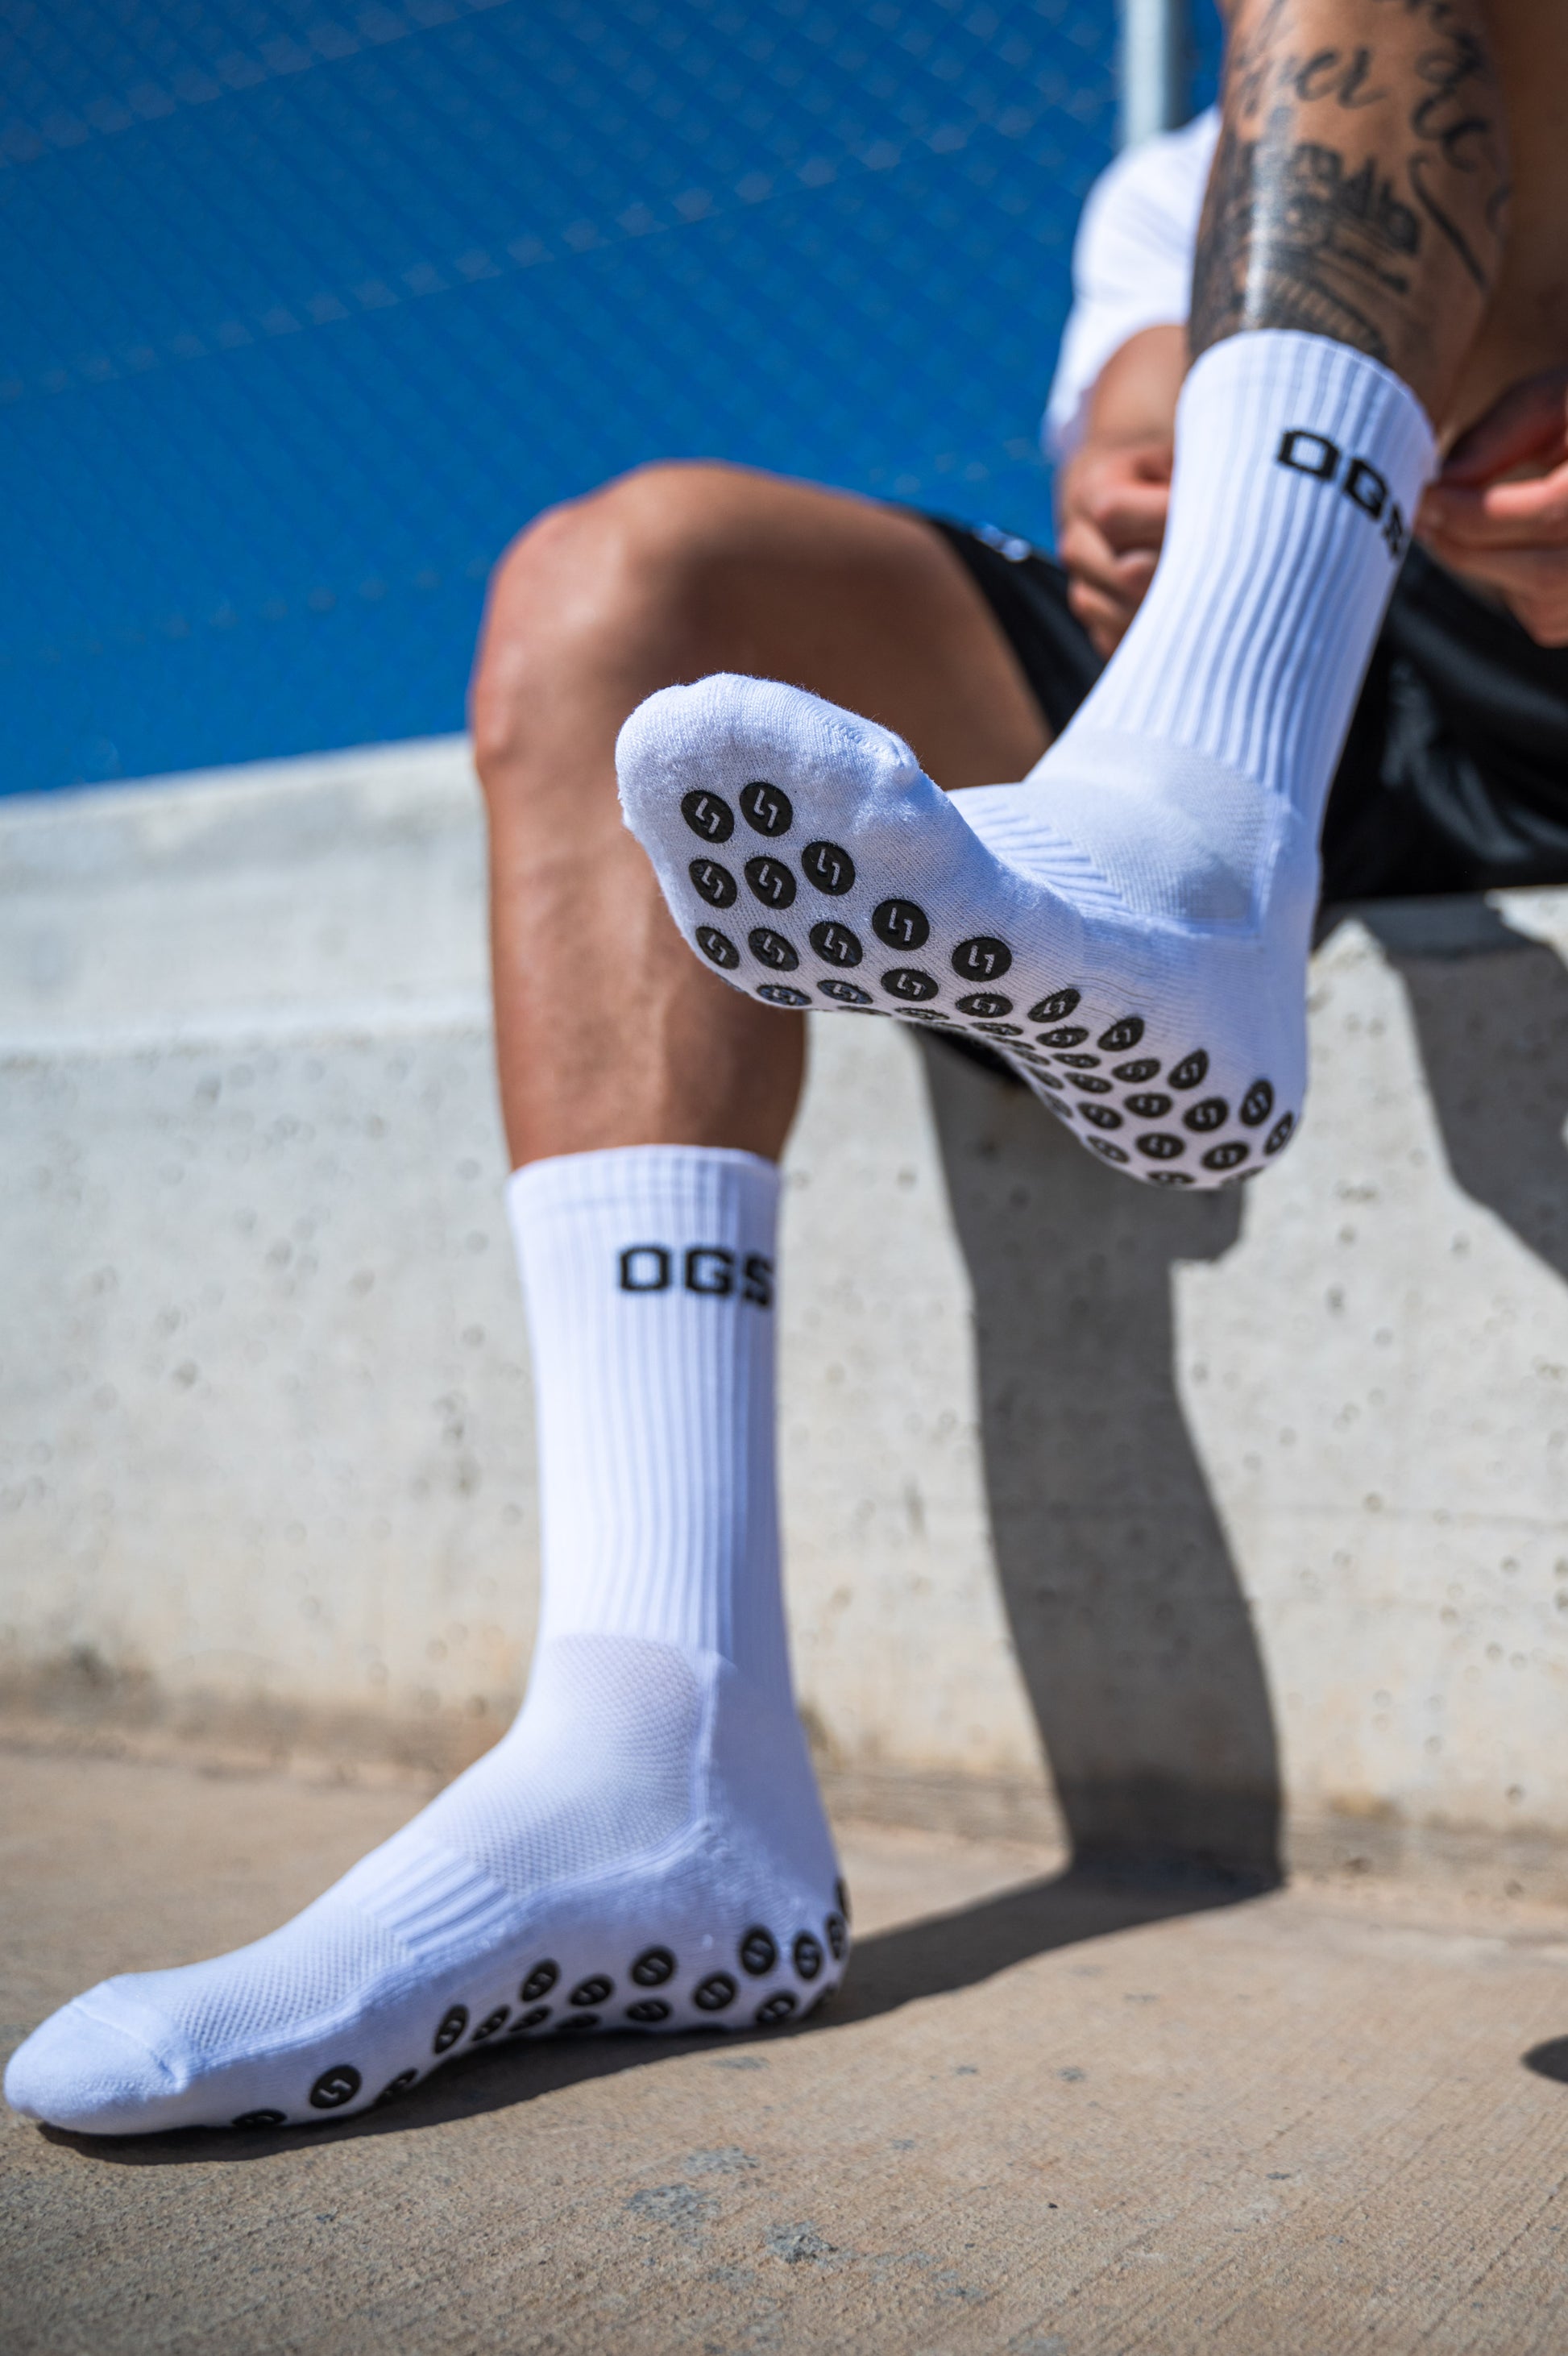 OGS White Grip Socks 2.0